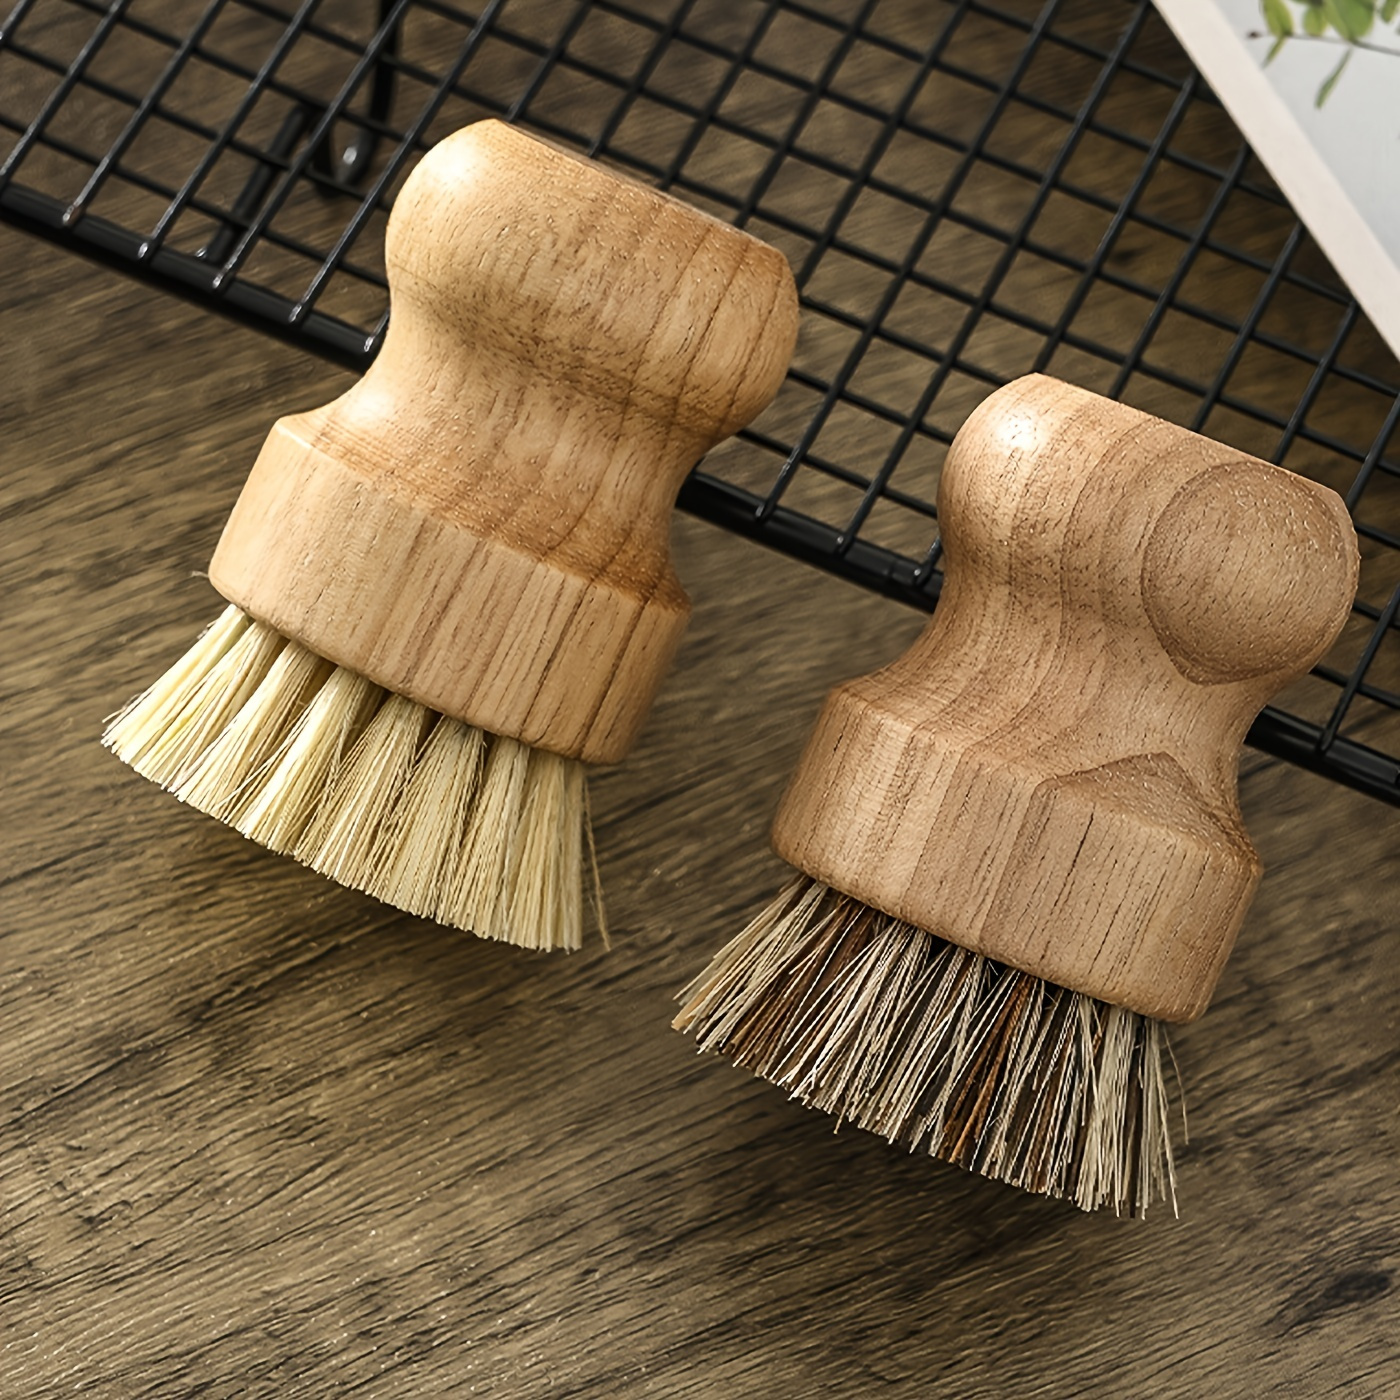 Scrubbing Brushes, Coconut Fibre & Wood, Bottle Brush, Pot Scrubber, Dishwashing  Brush, Eco Friendly, Multifunctional Cleaning Brushes 